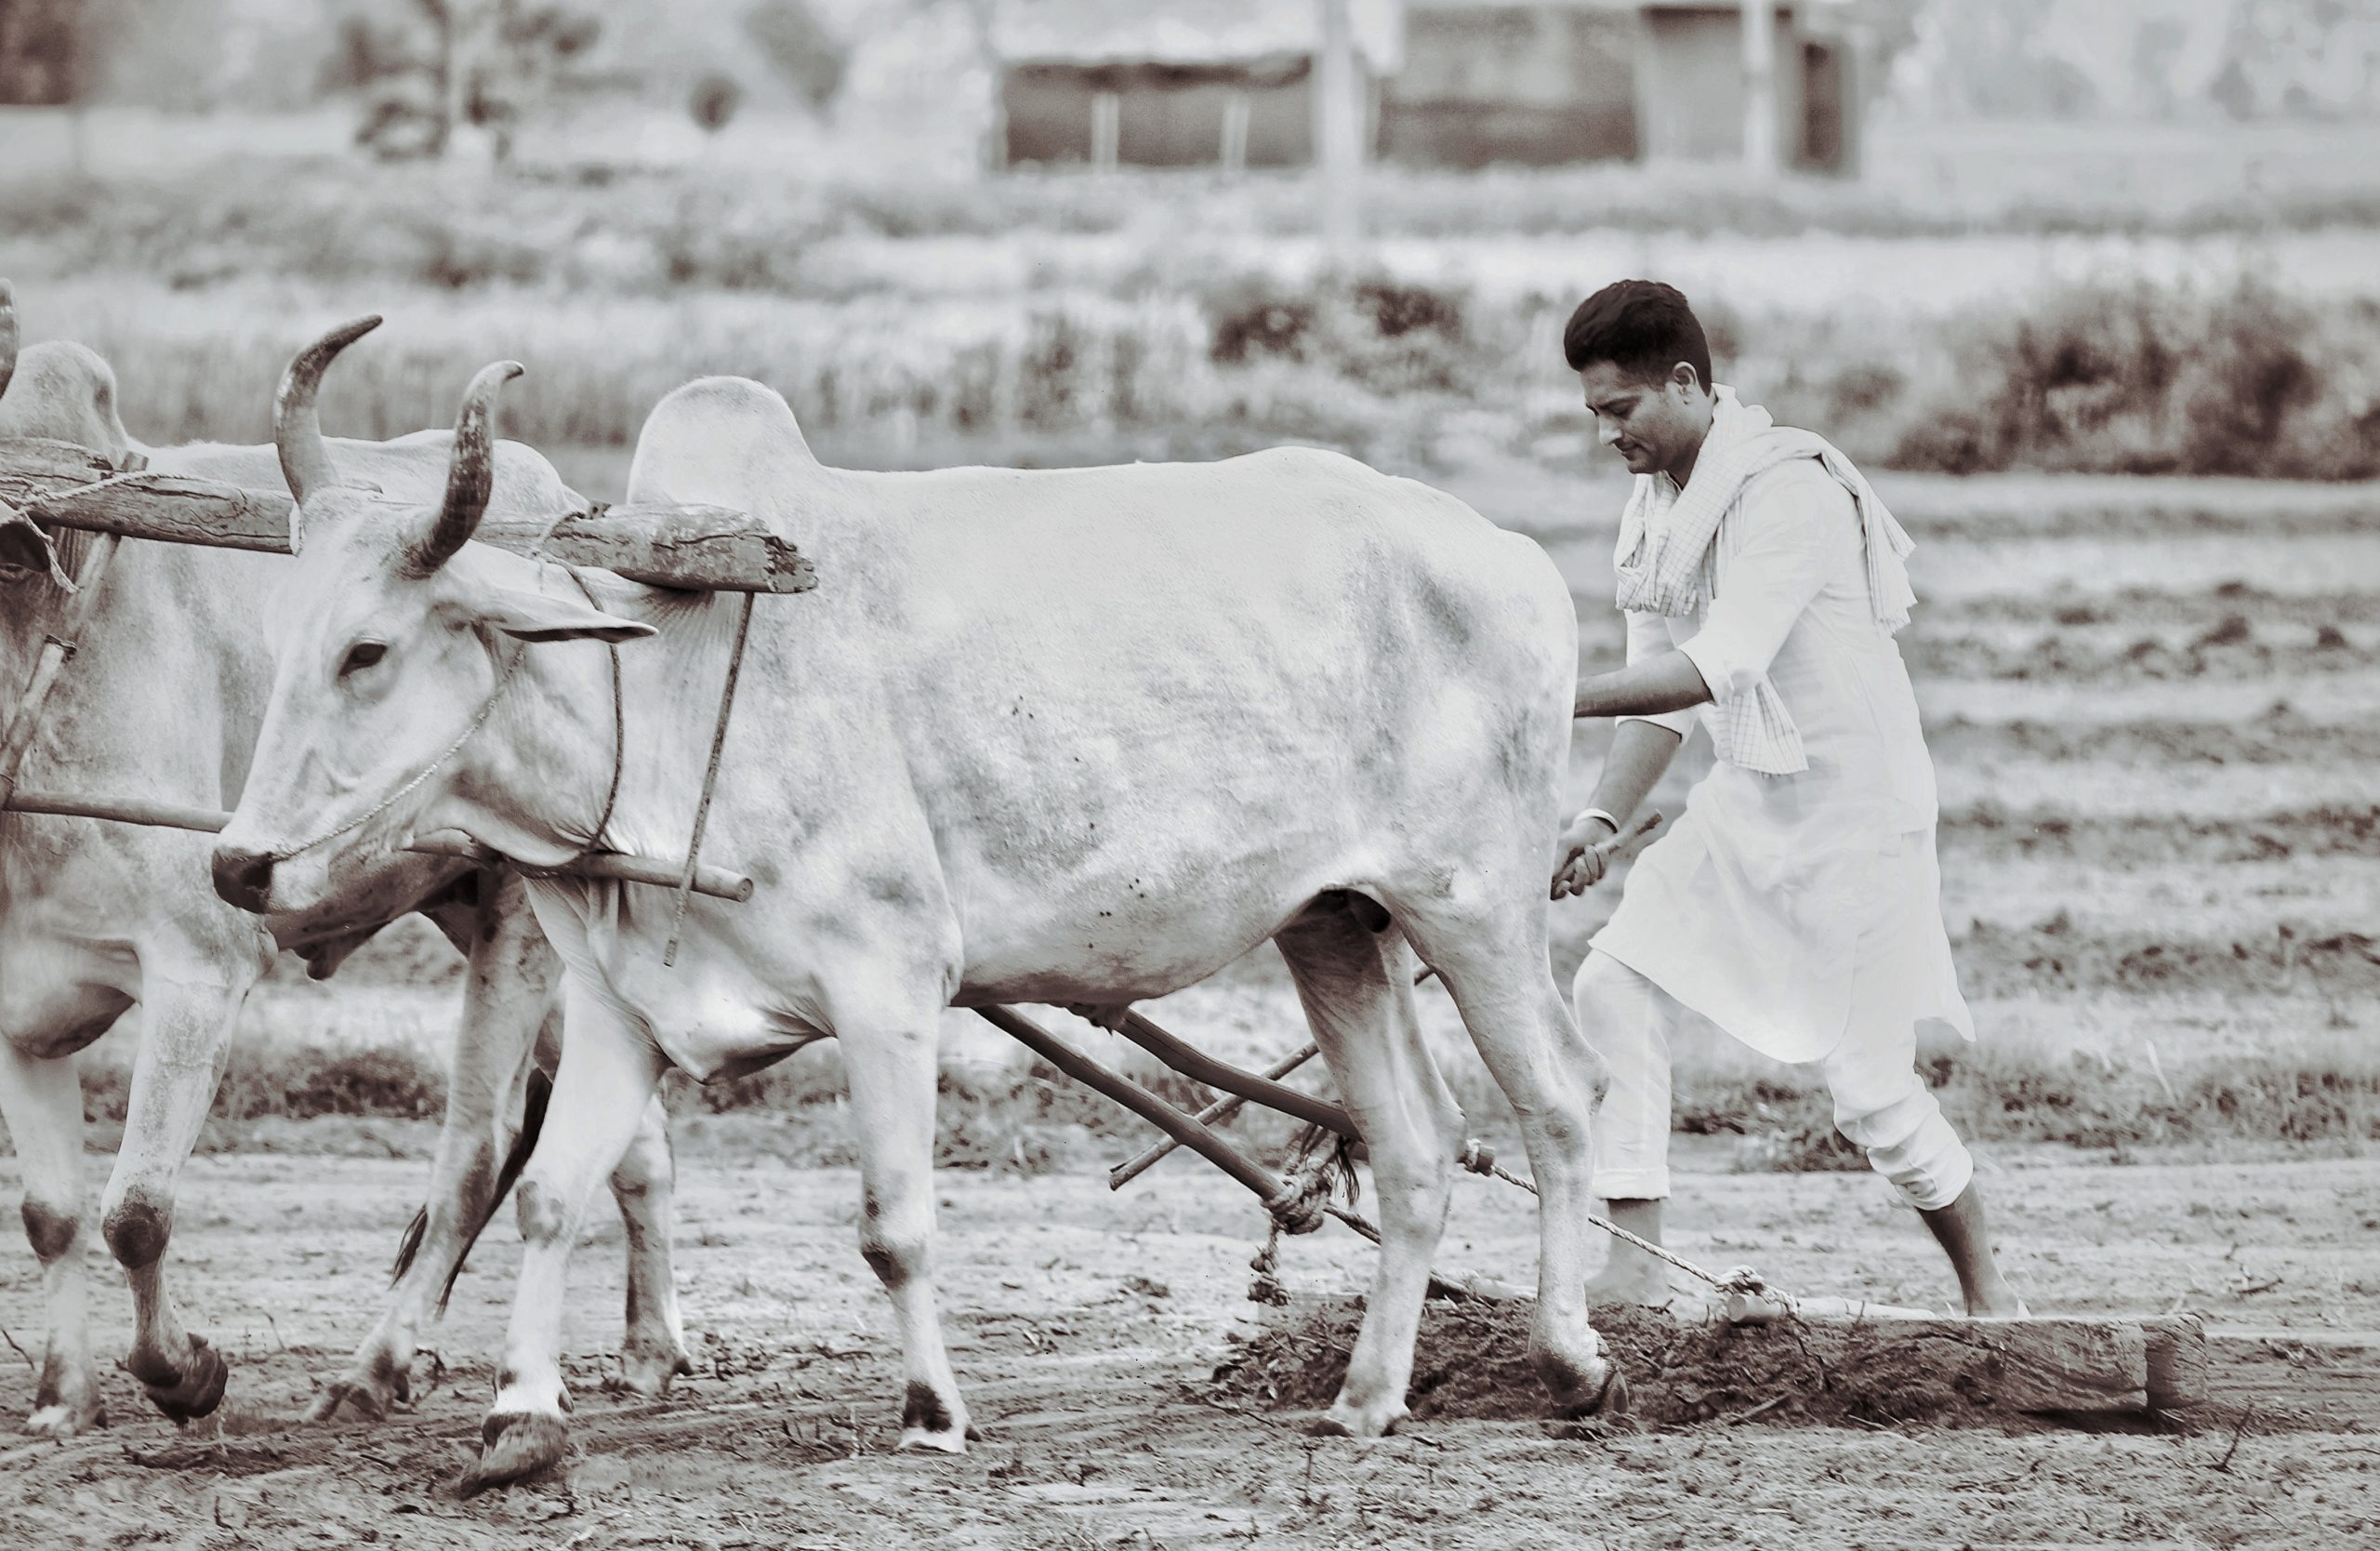 Farmer doing cultivation